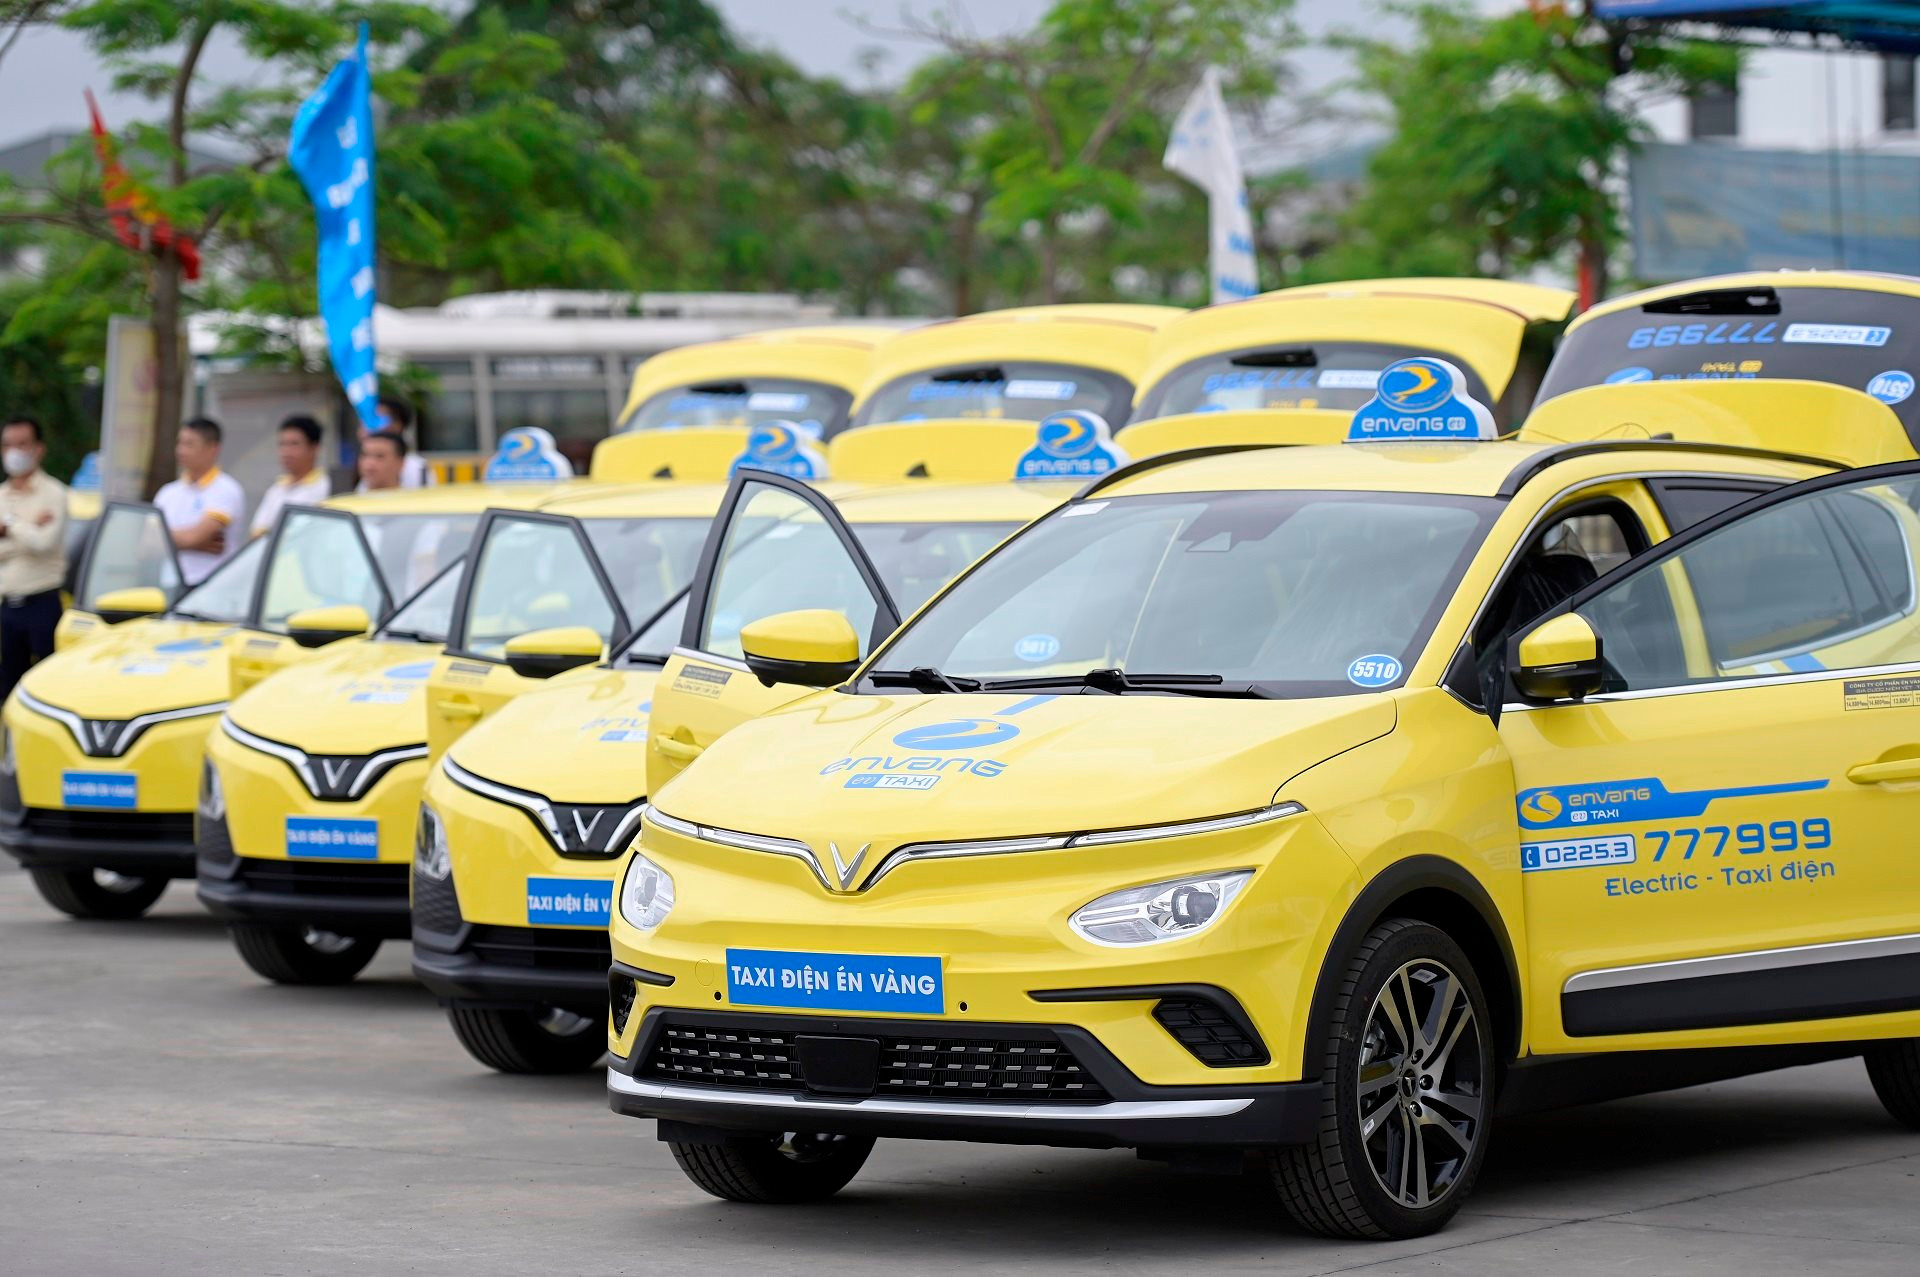 Taxi Én Vàng mua và thuê 150 xe điện VinFast, ra mắt dịch vụ taxi điện đầu tiên tại Hải Phòng - Ảnh 1.